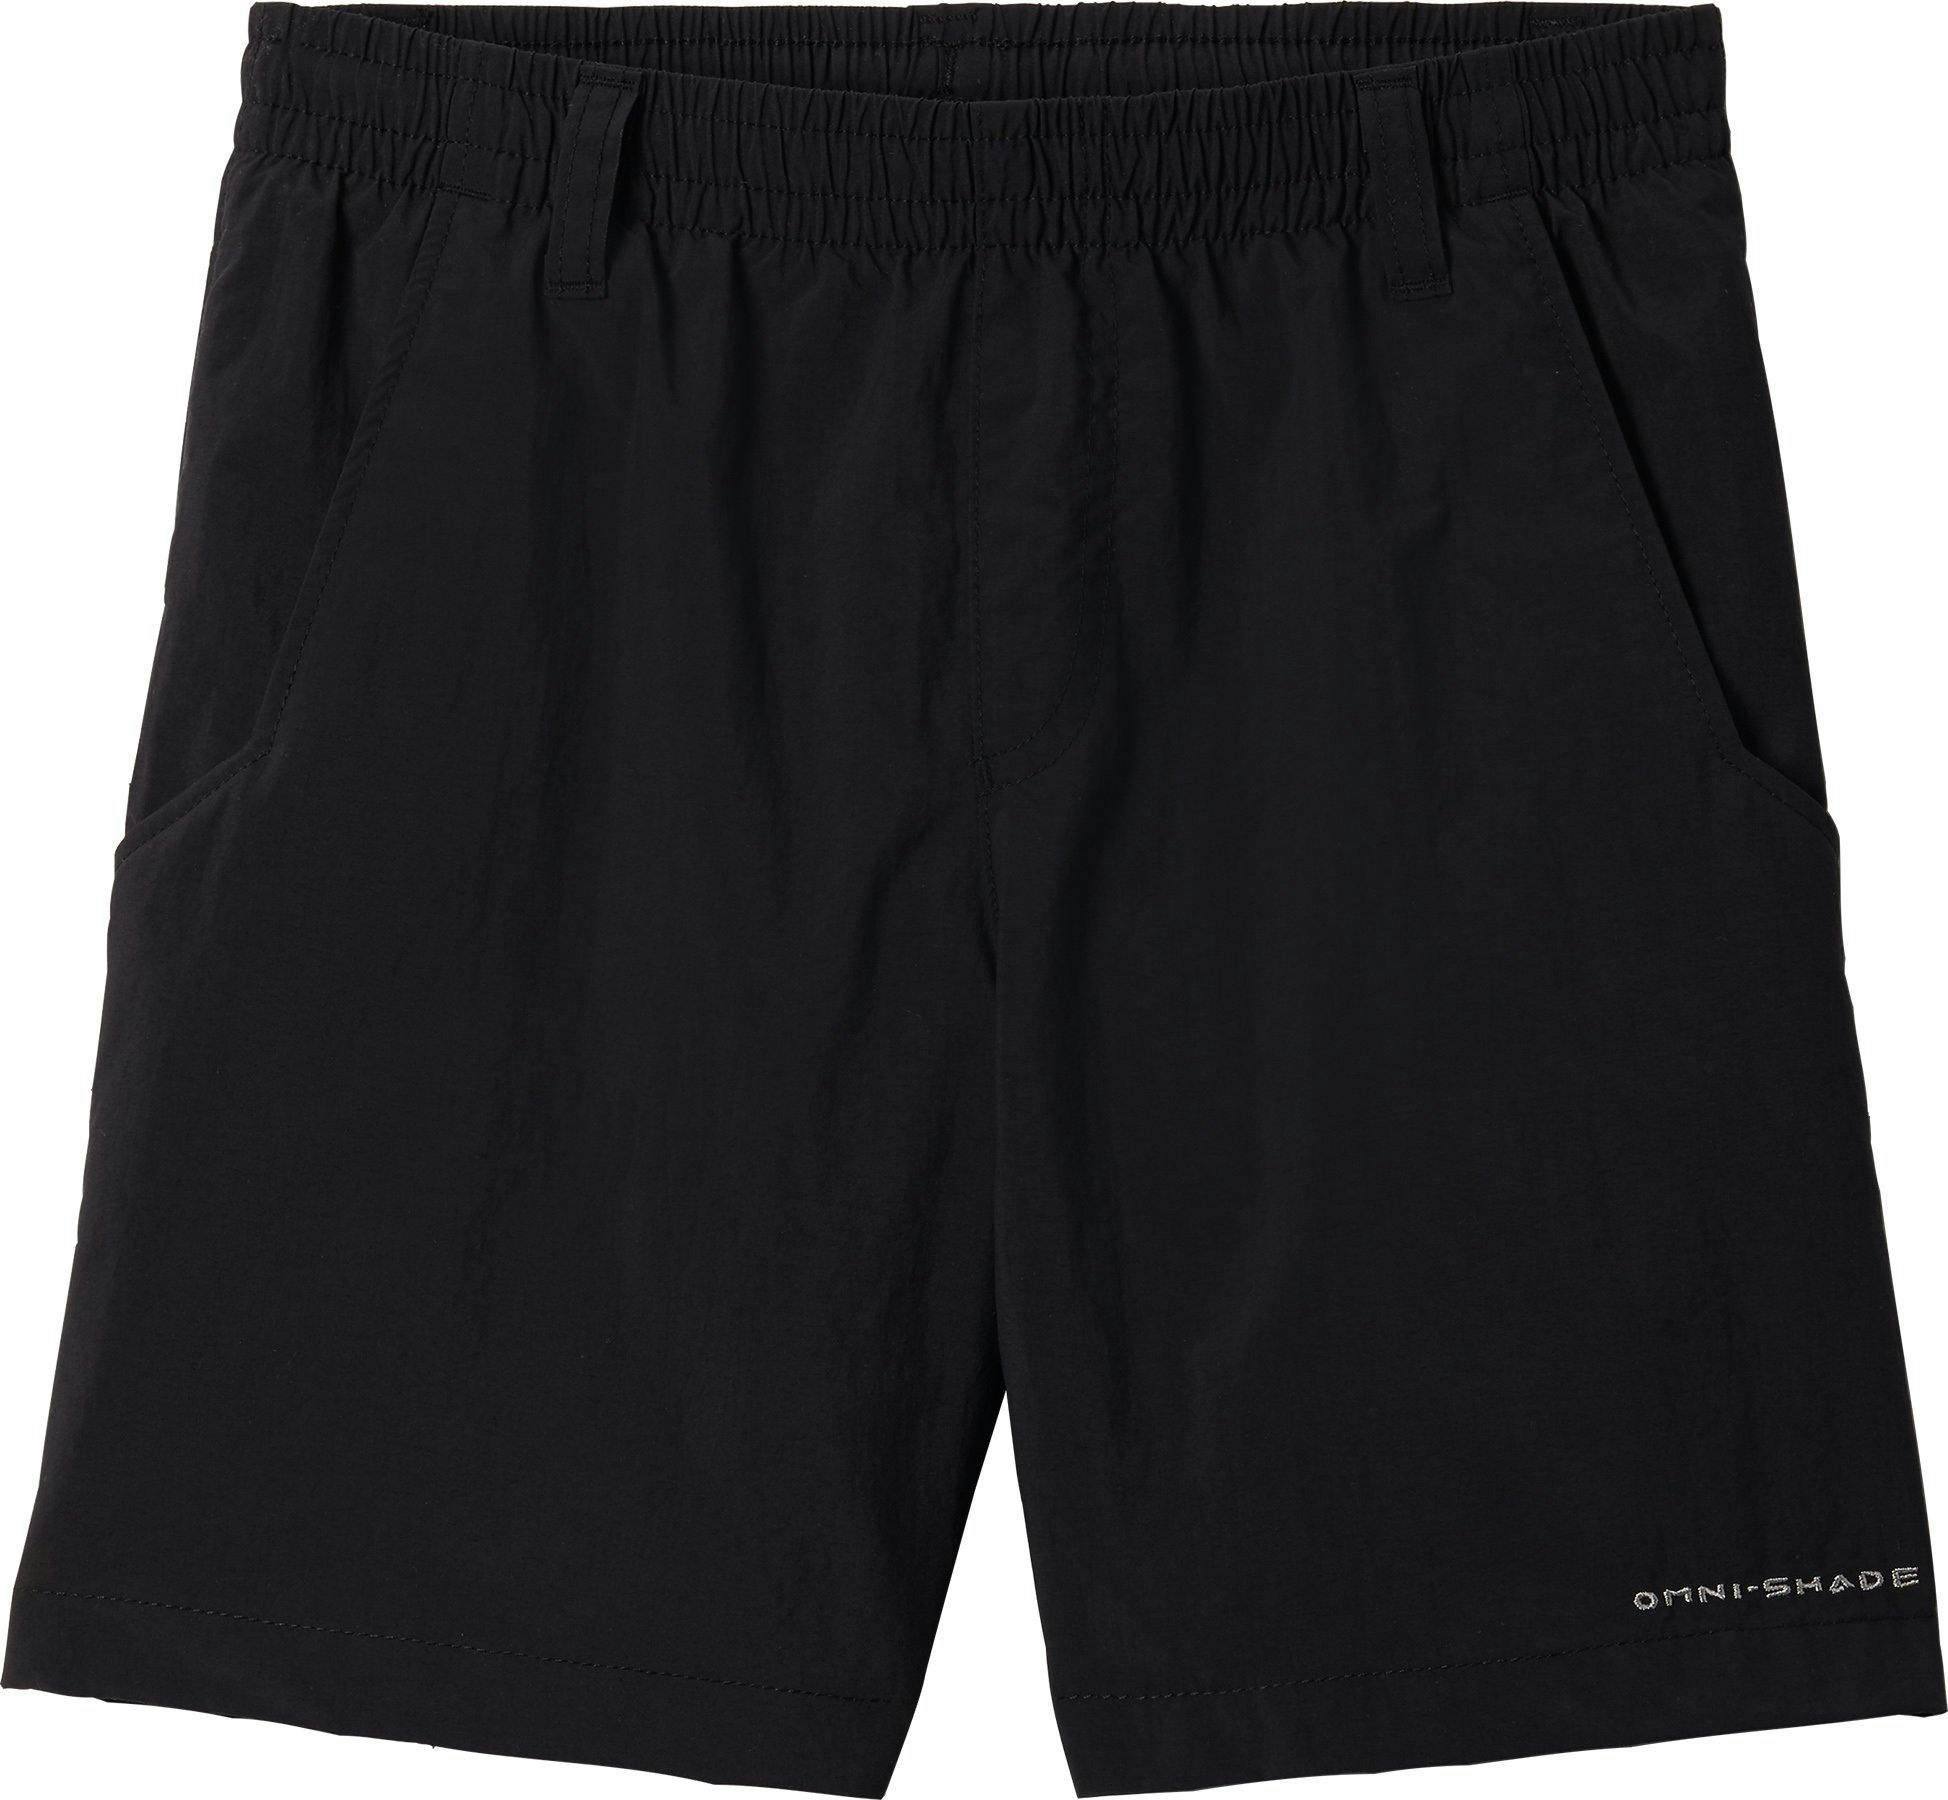 Product image for PFG Backcast Shorts - Boys